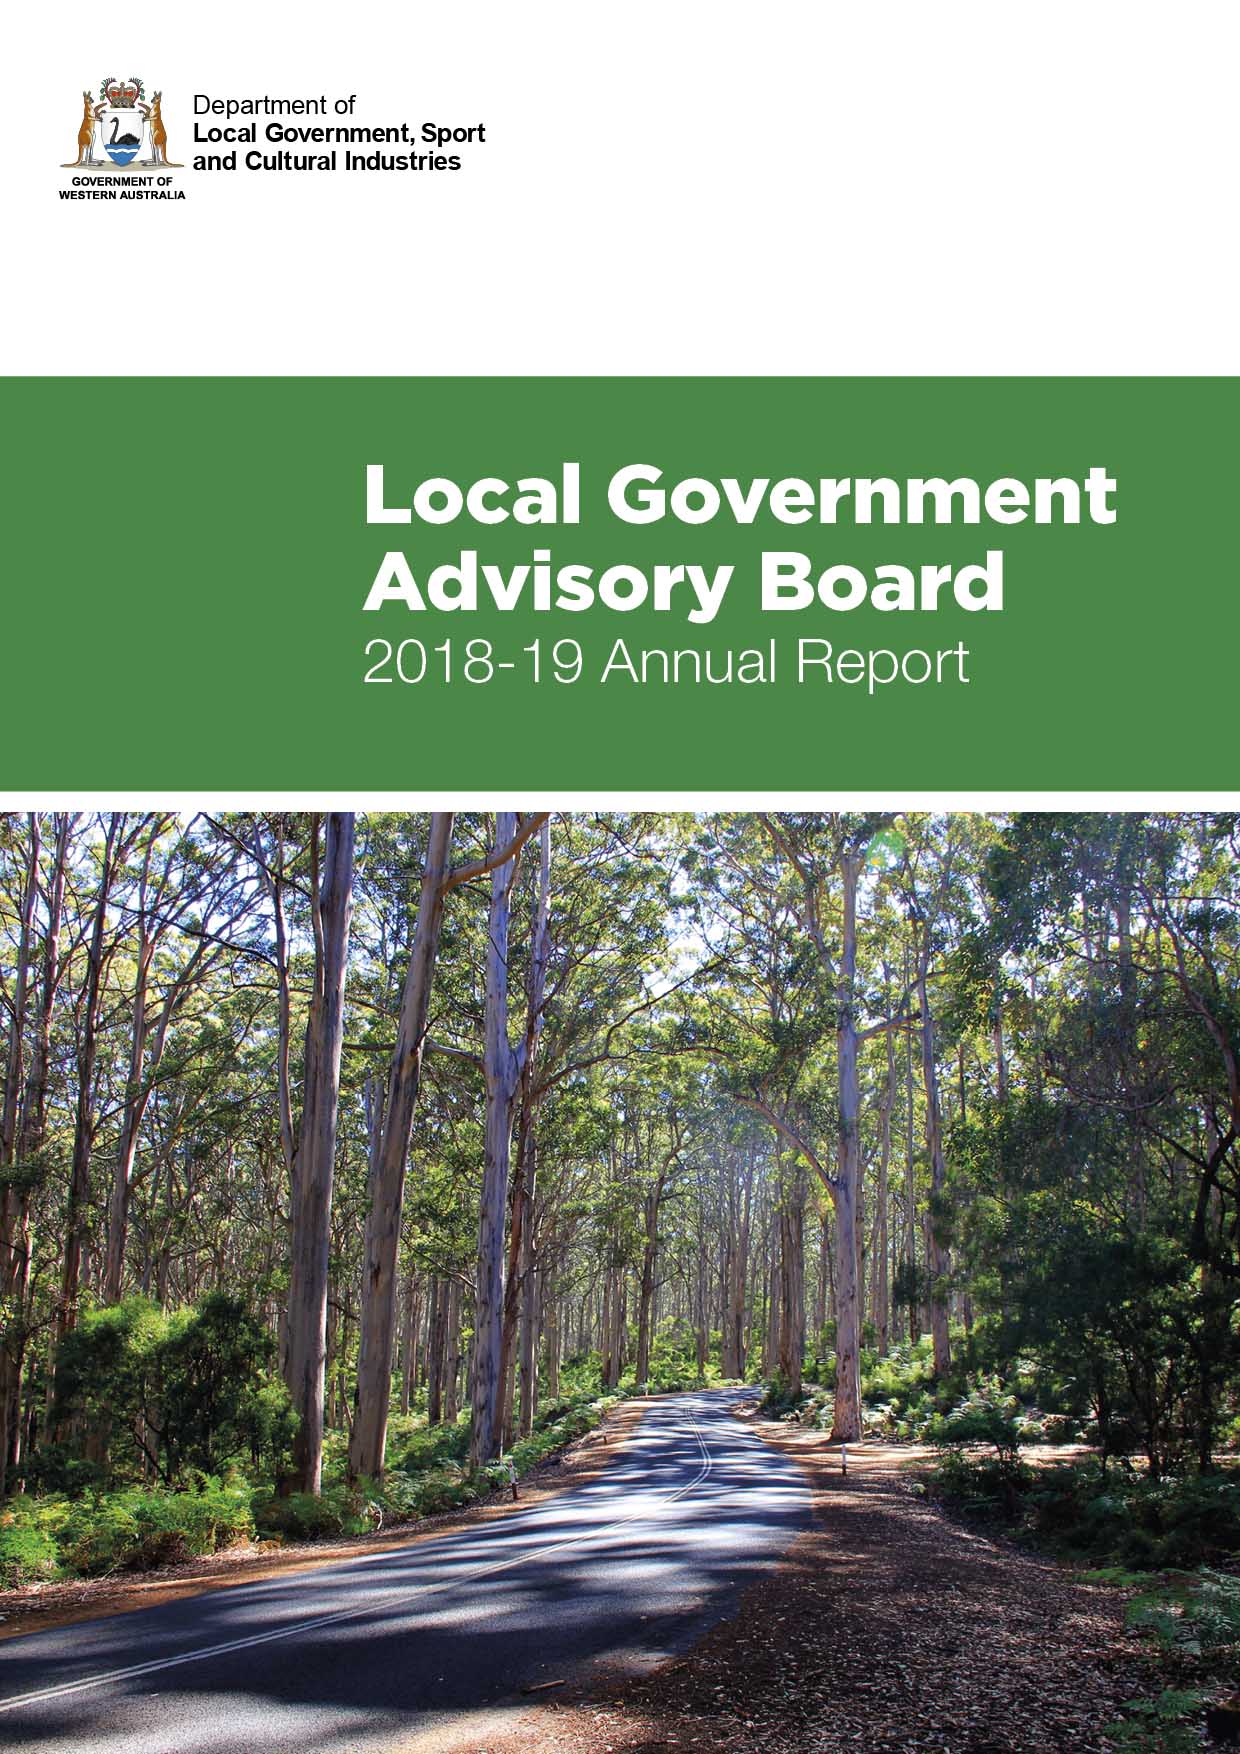 Local Government Advisory Board Annual Report 2018-19